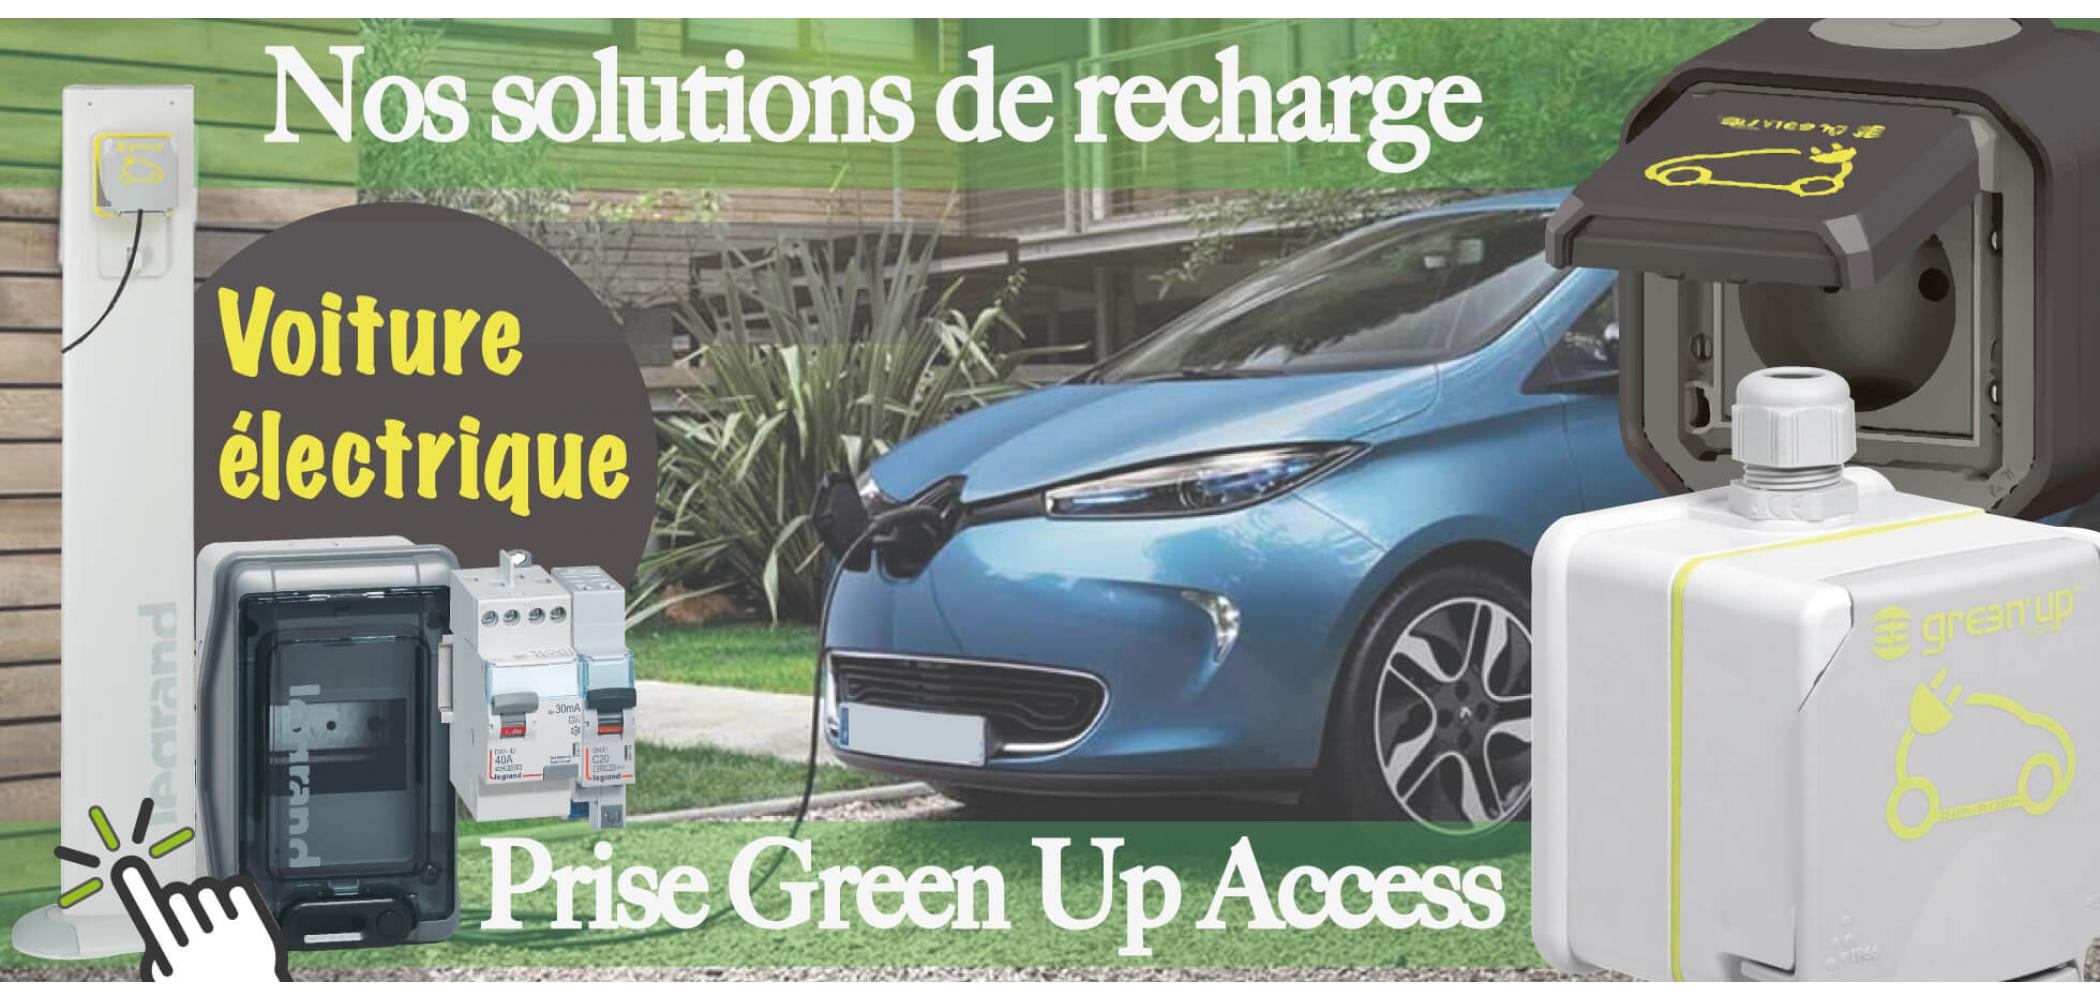 Borne de recharge voiture électrique - pack prise Green'up Access